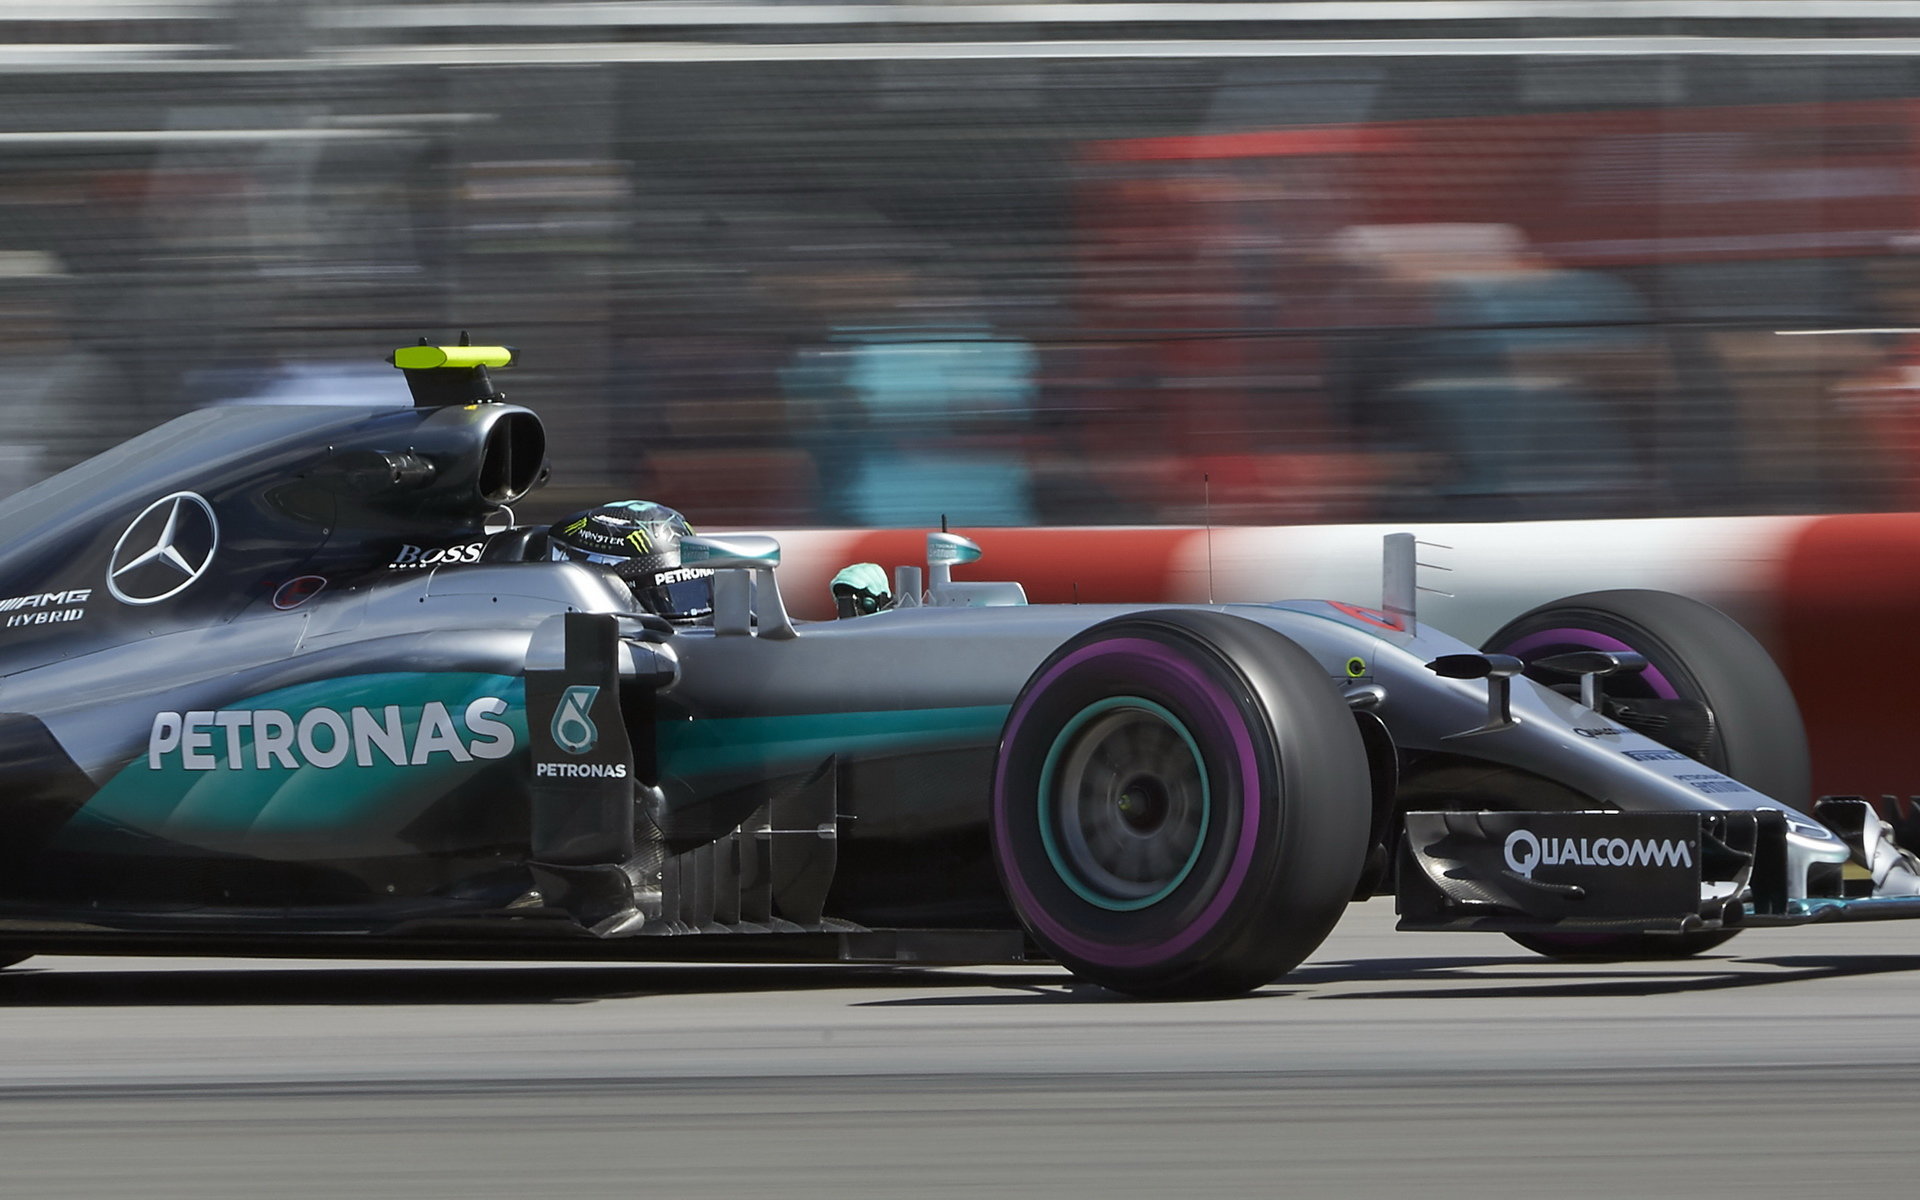 Nico Rosberg v závodě v Kanadě